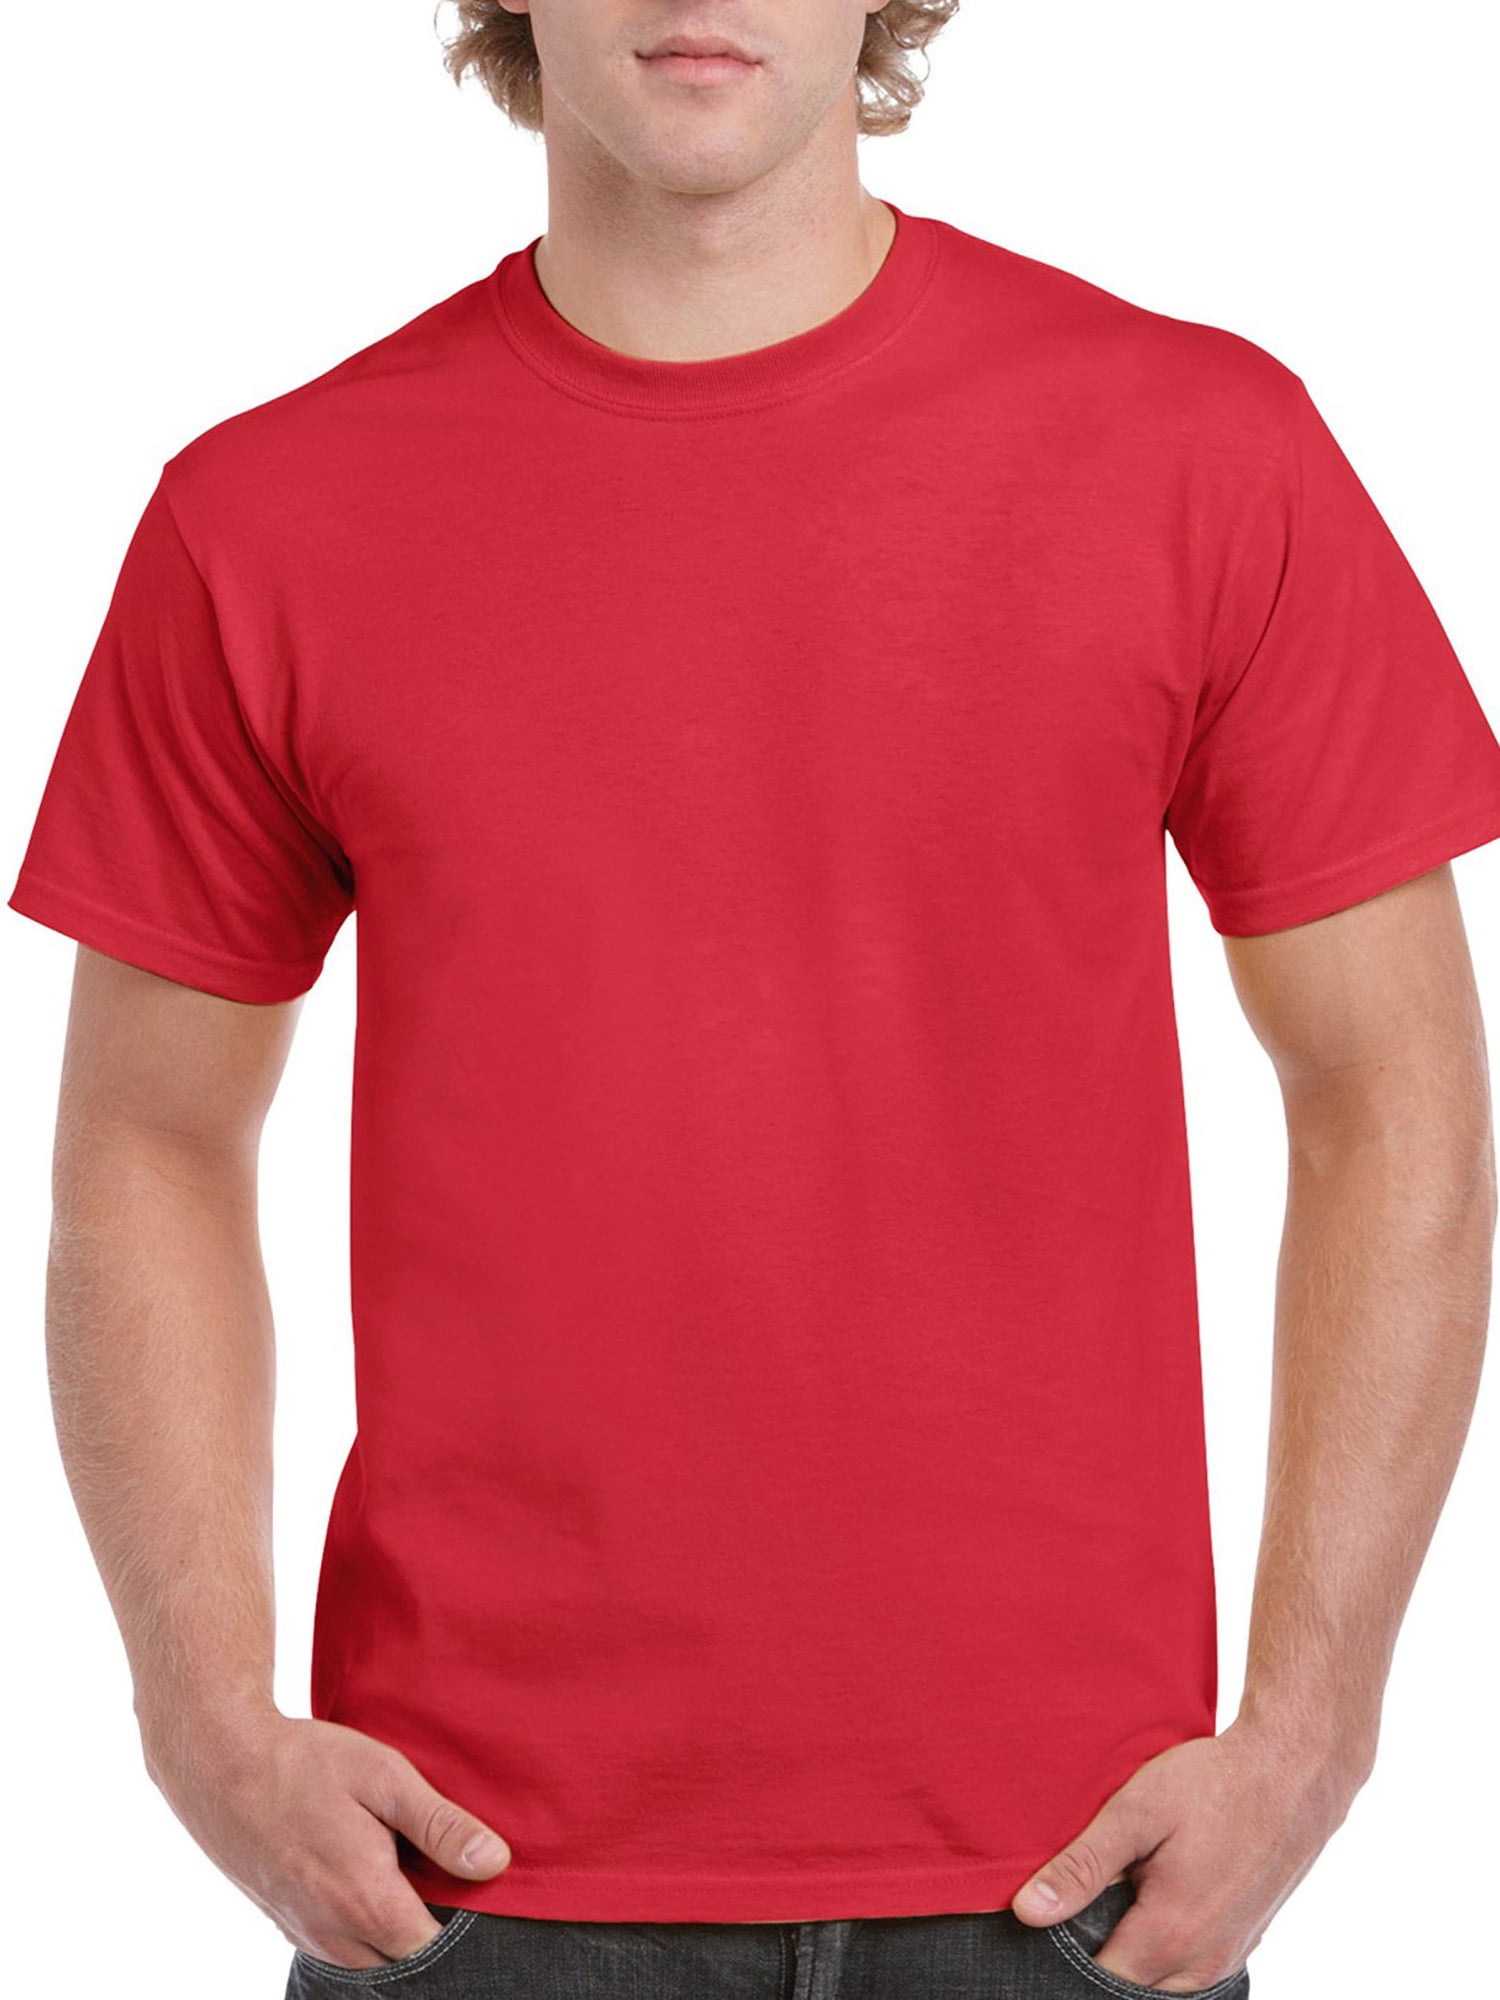 GILDAN Mens Ultra Cotton T-Shirt